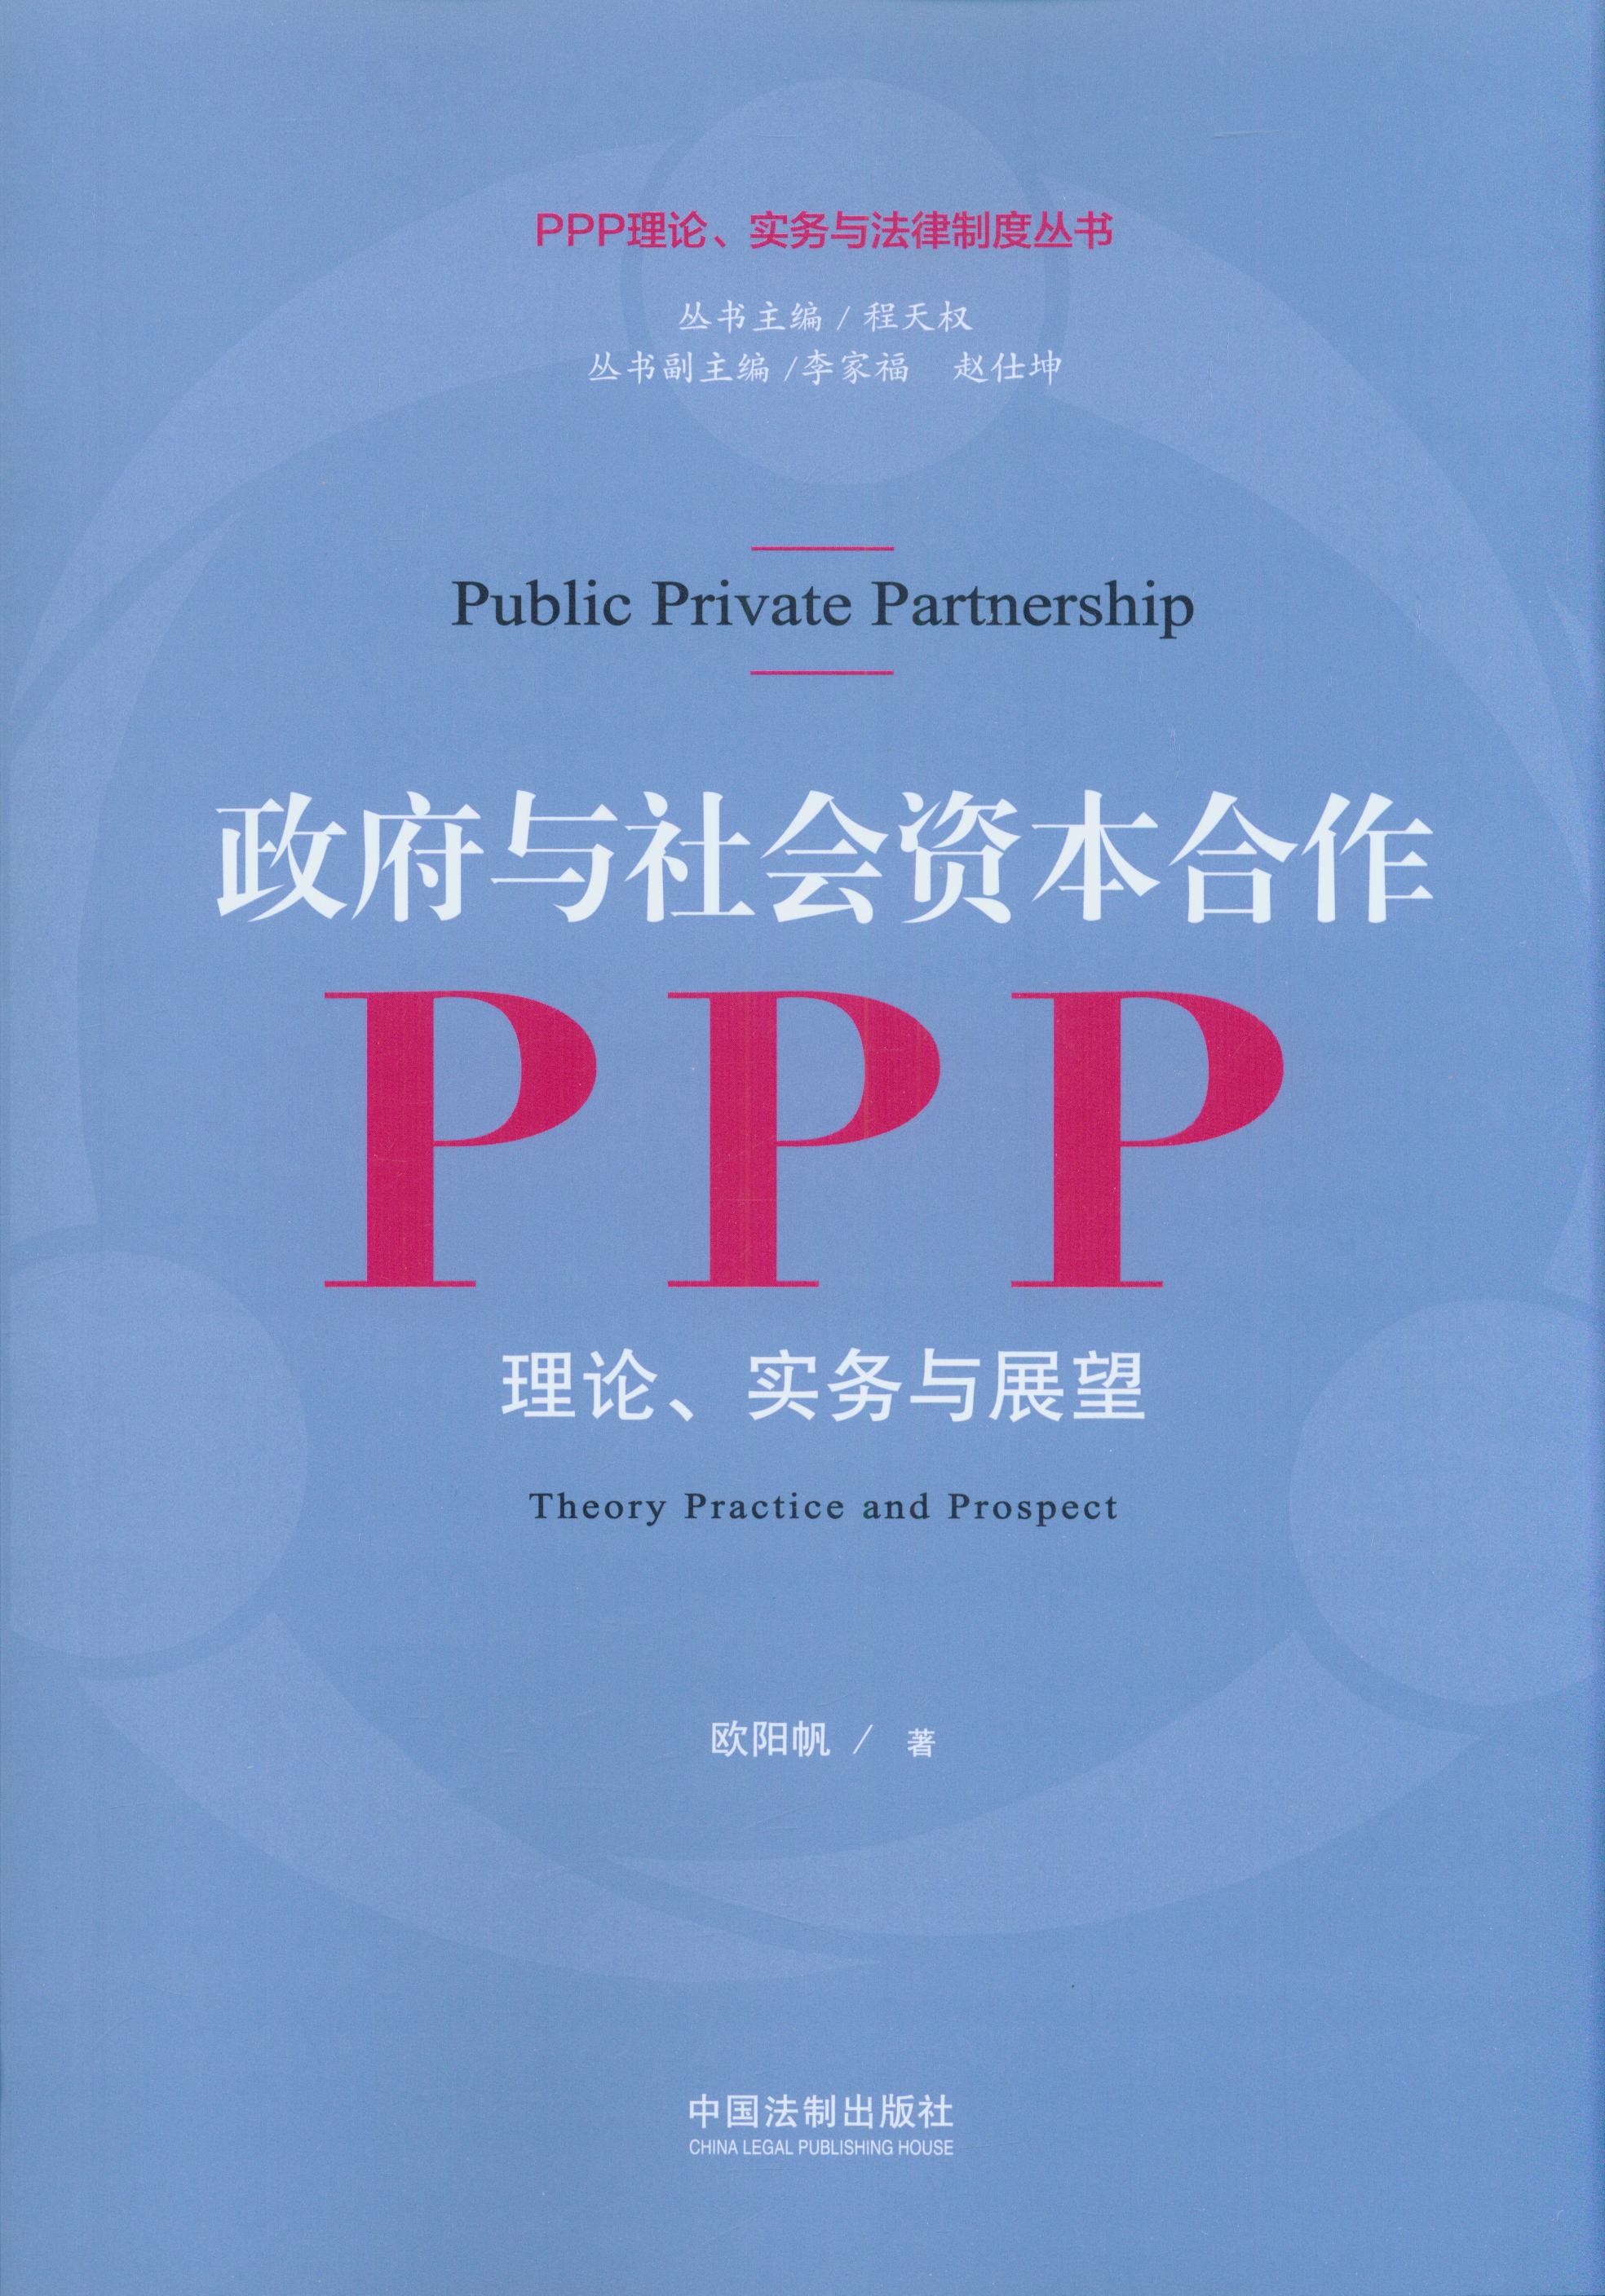 政府与社会资本合作:PPP:理论、实务与展望